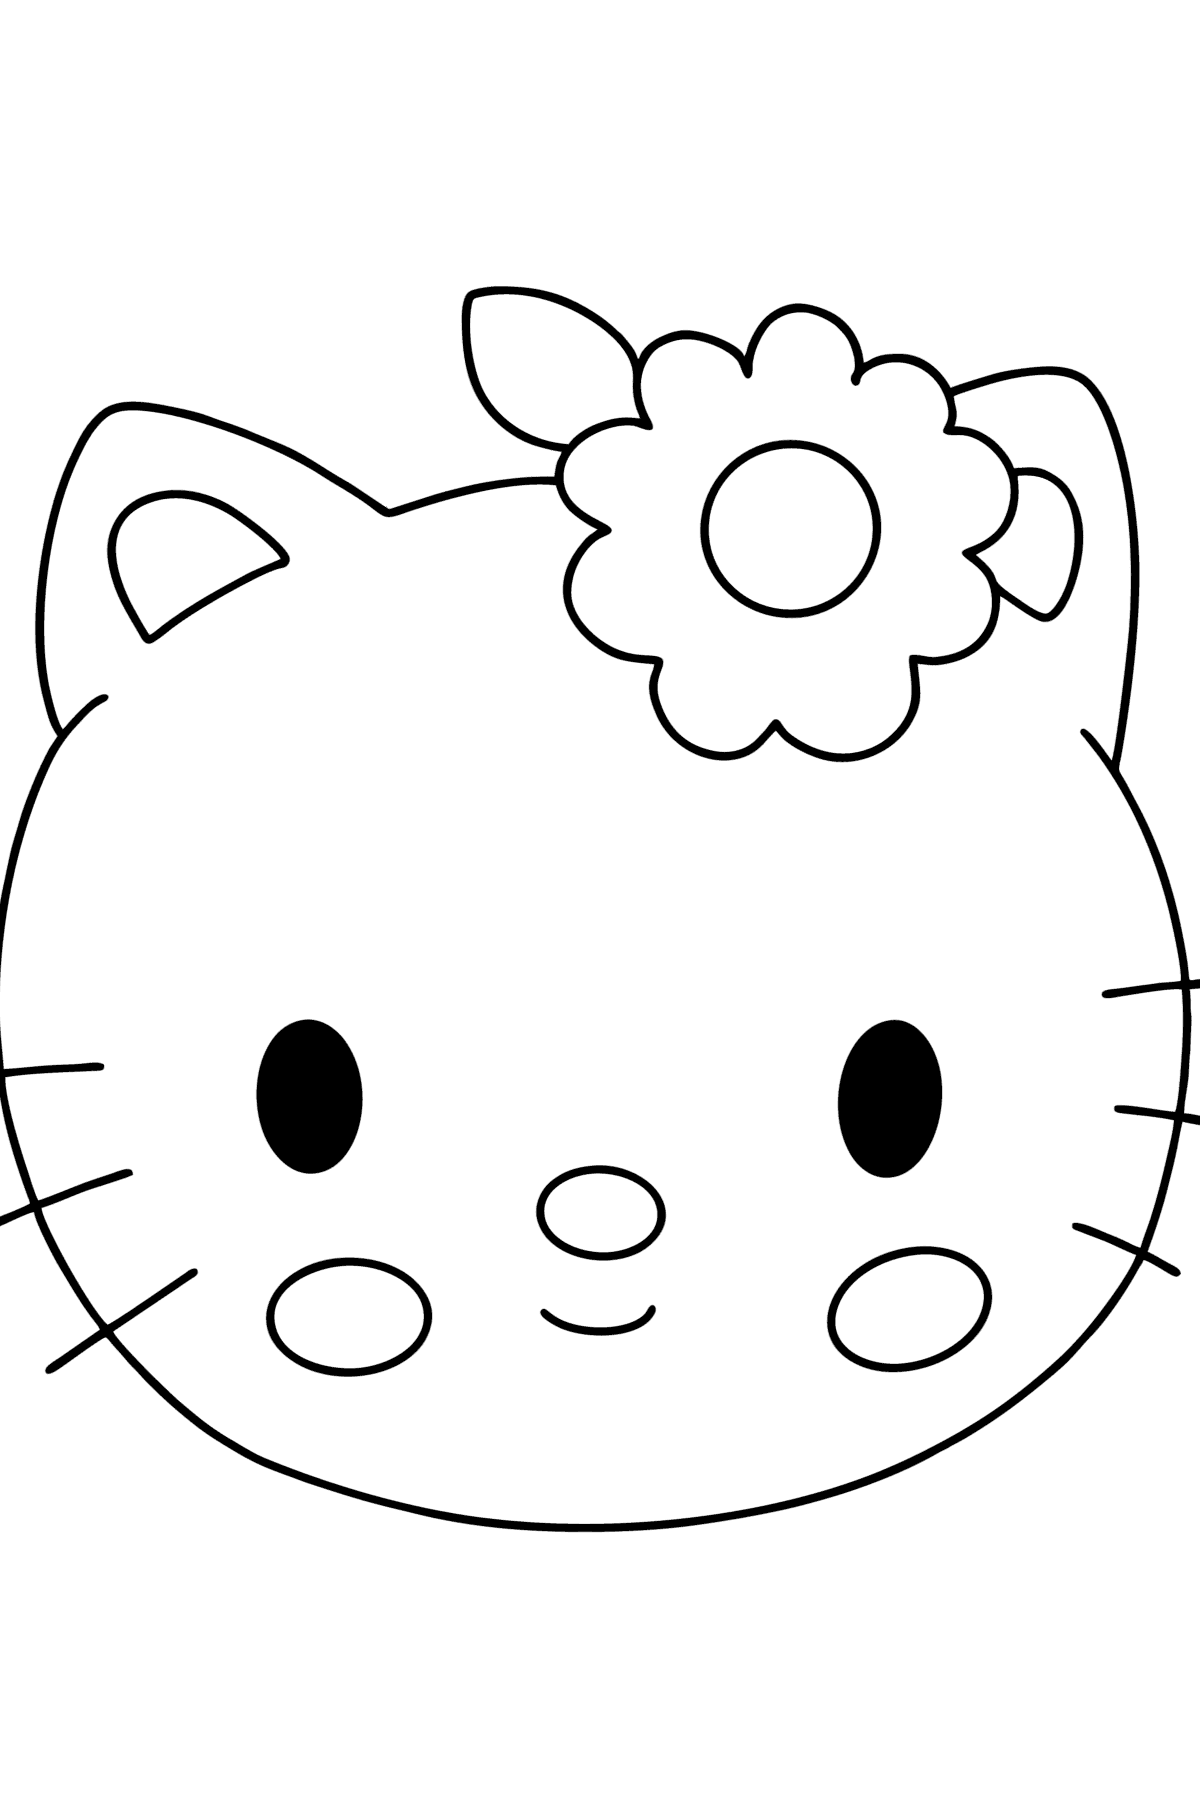 Dibujo de Bozal de Hello Kitty para colorear - Dibujos para Colorear para Niños